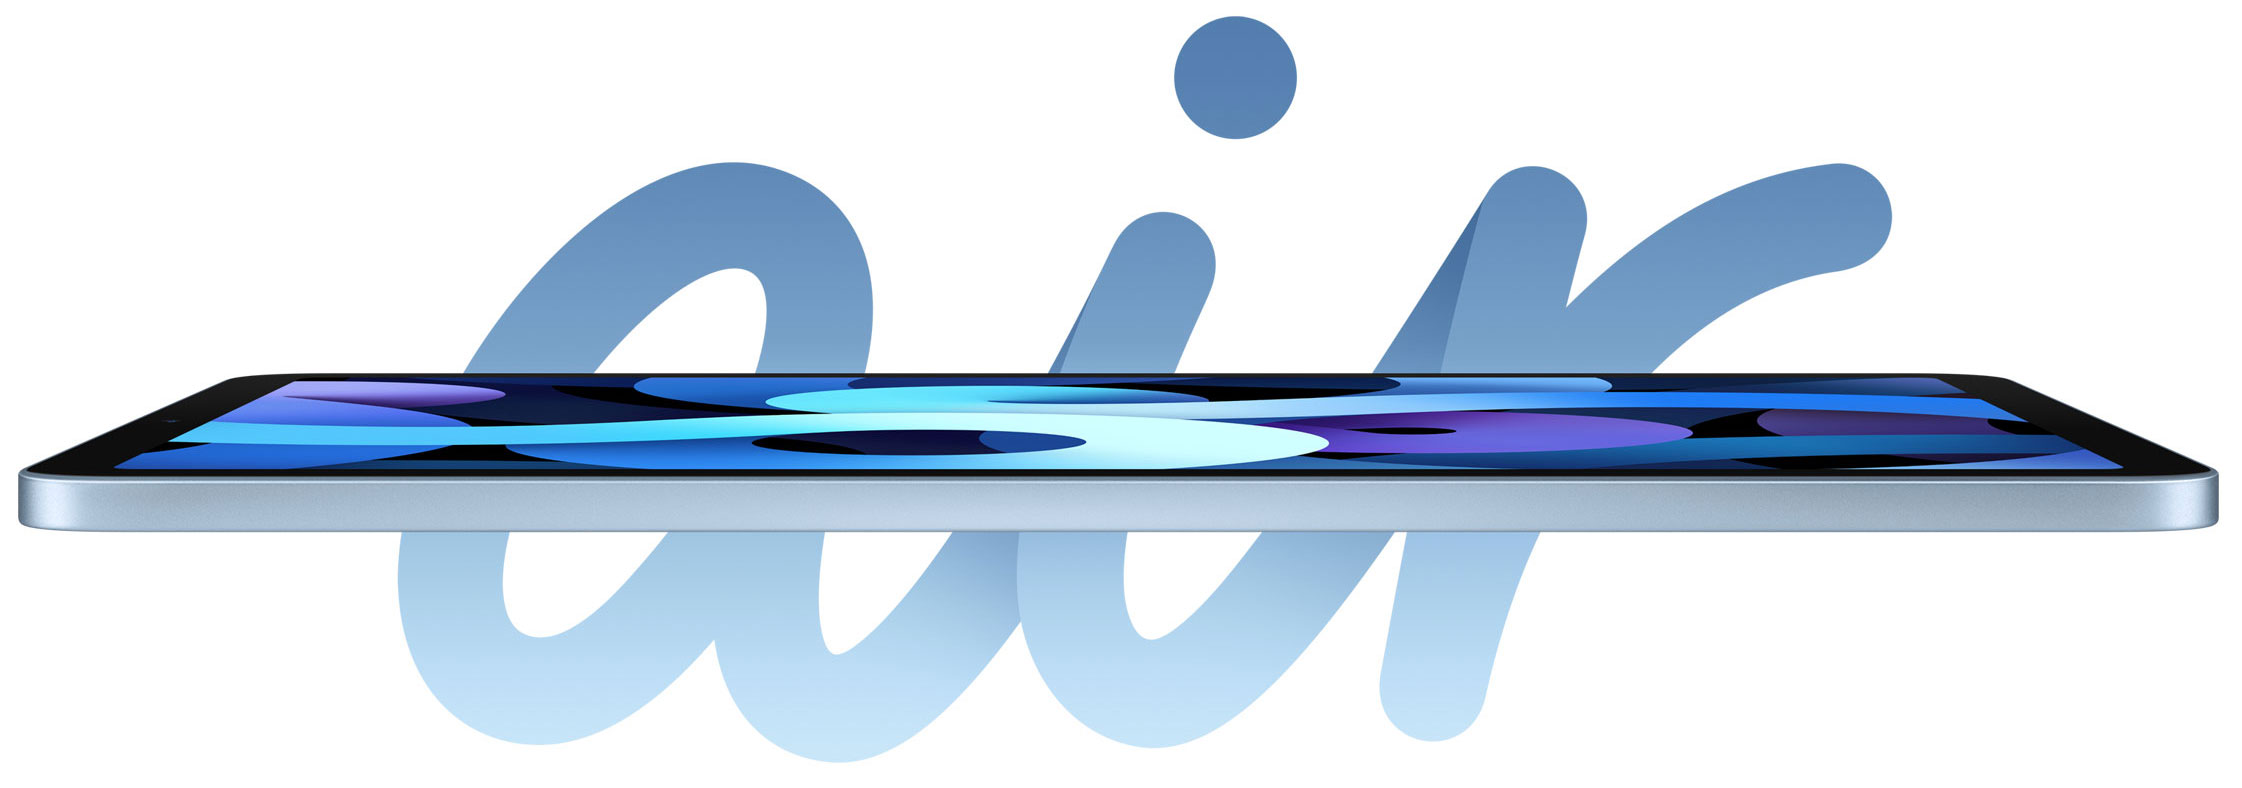 Nueva iPad Air podría salir a la venta el 24 de octubre